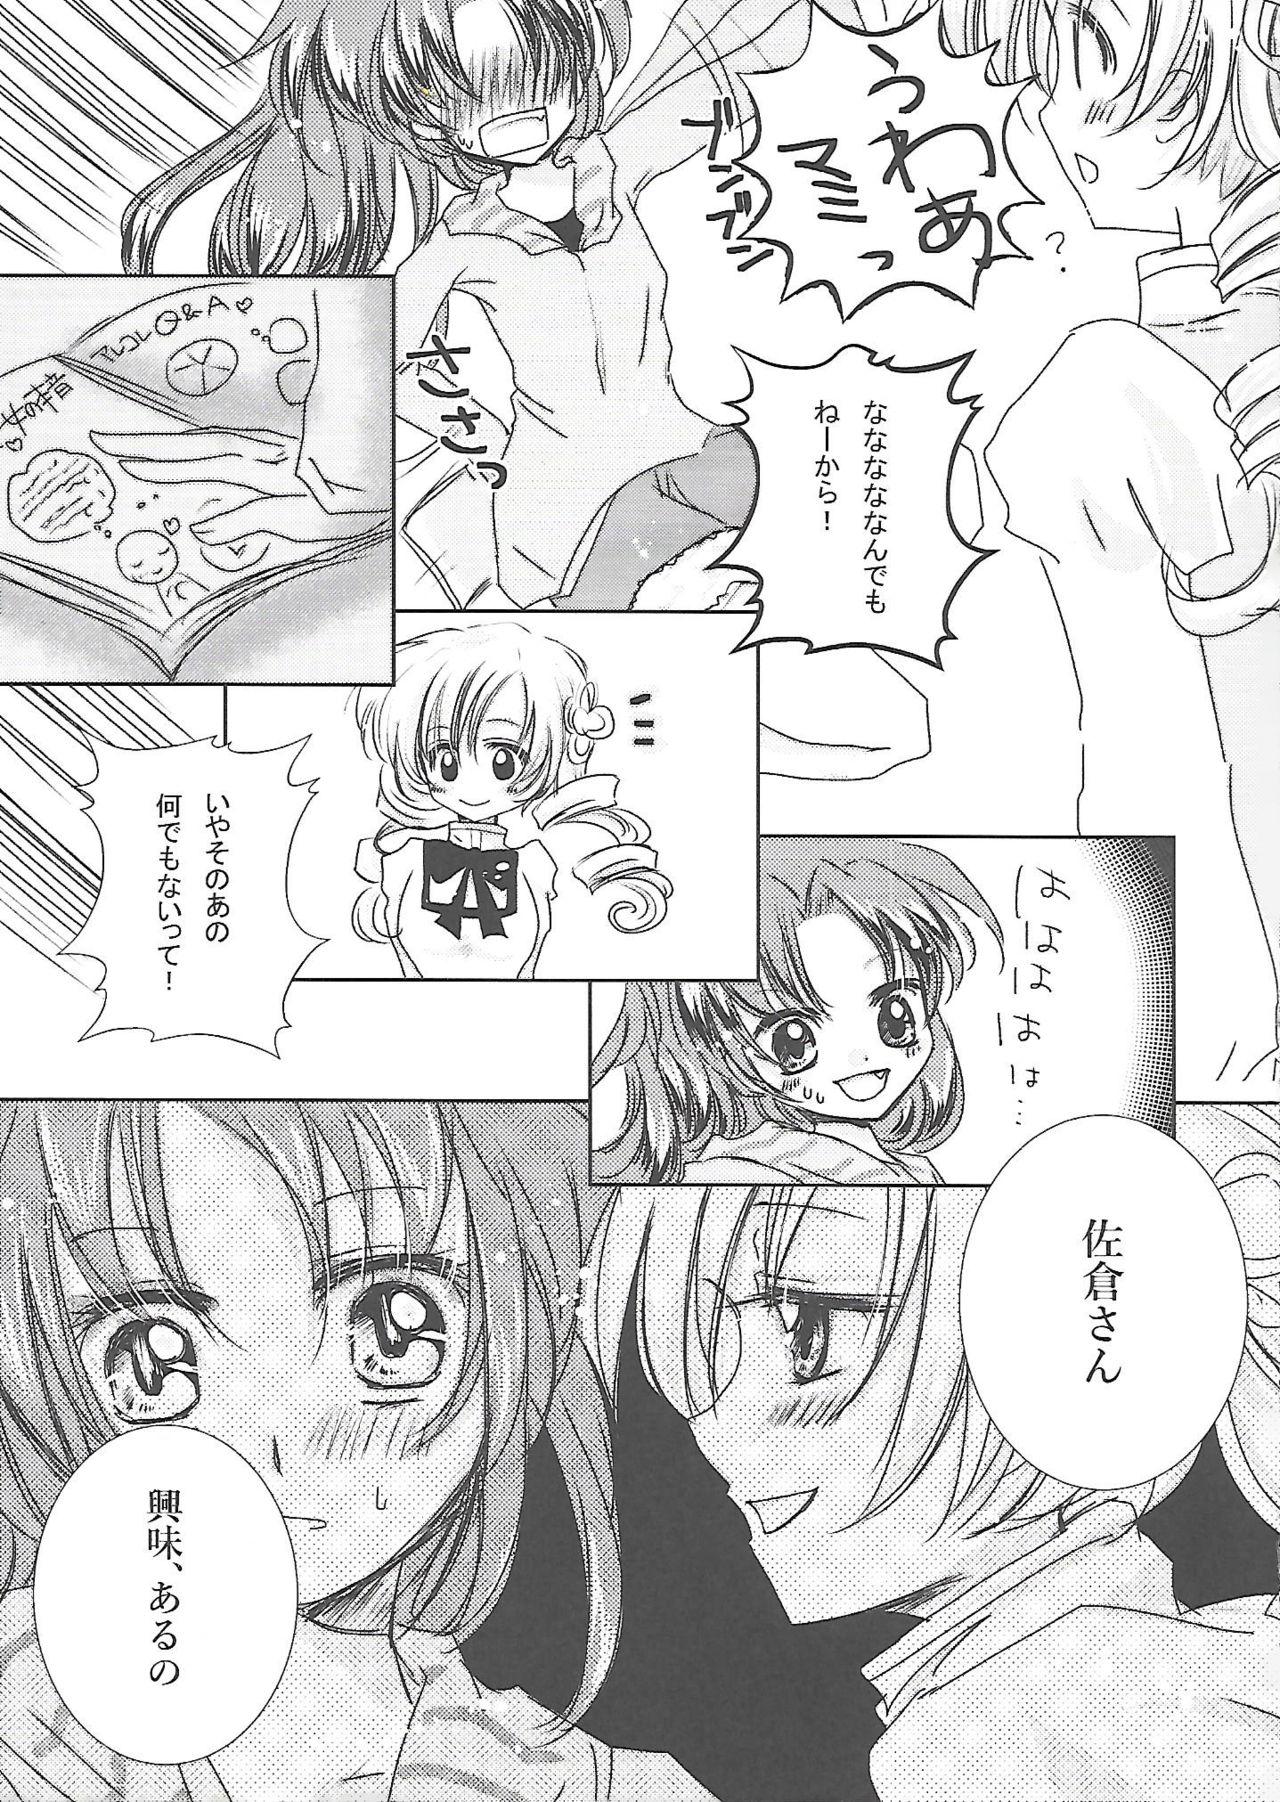 Rub Kousoku Shitai no - Puella magi madoka magica Whore - Page 6